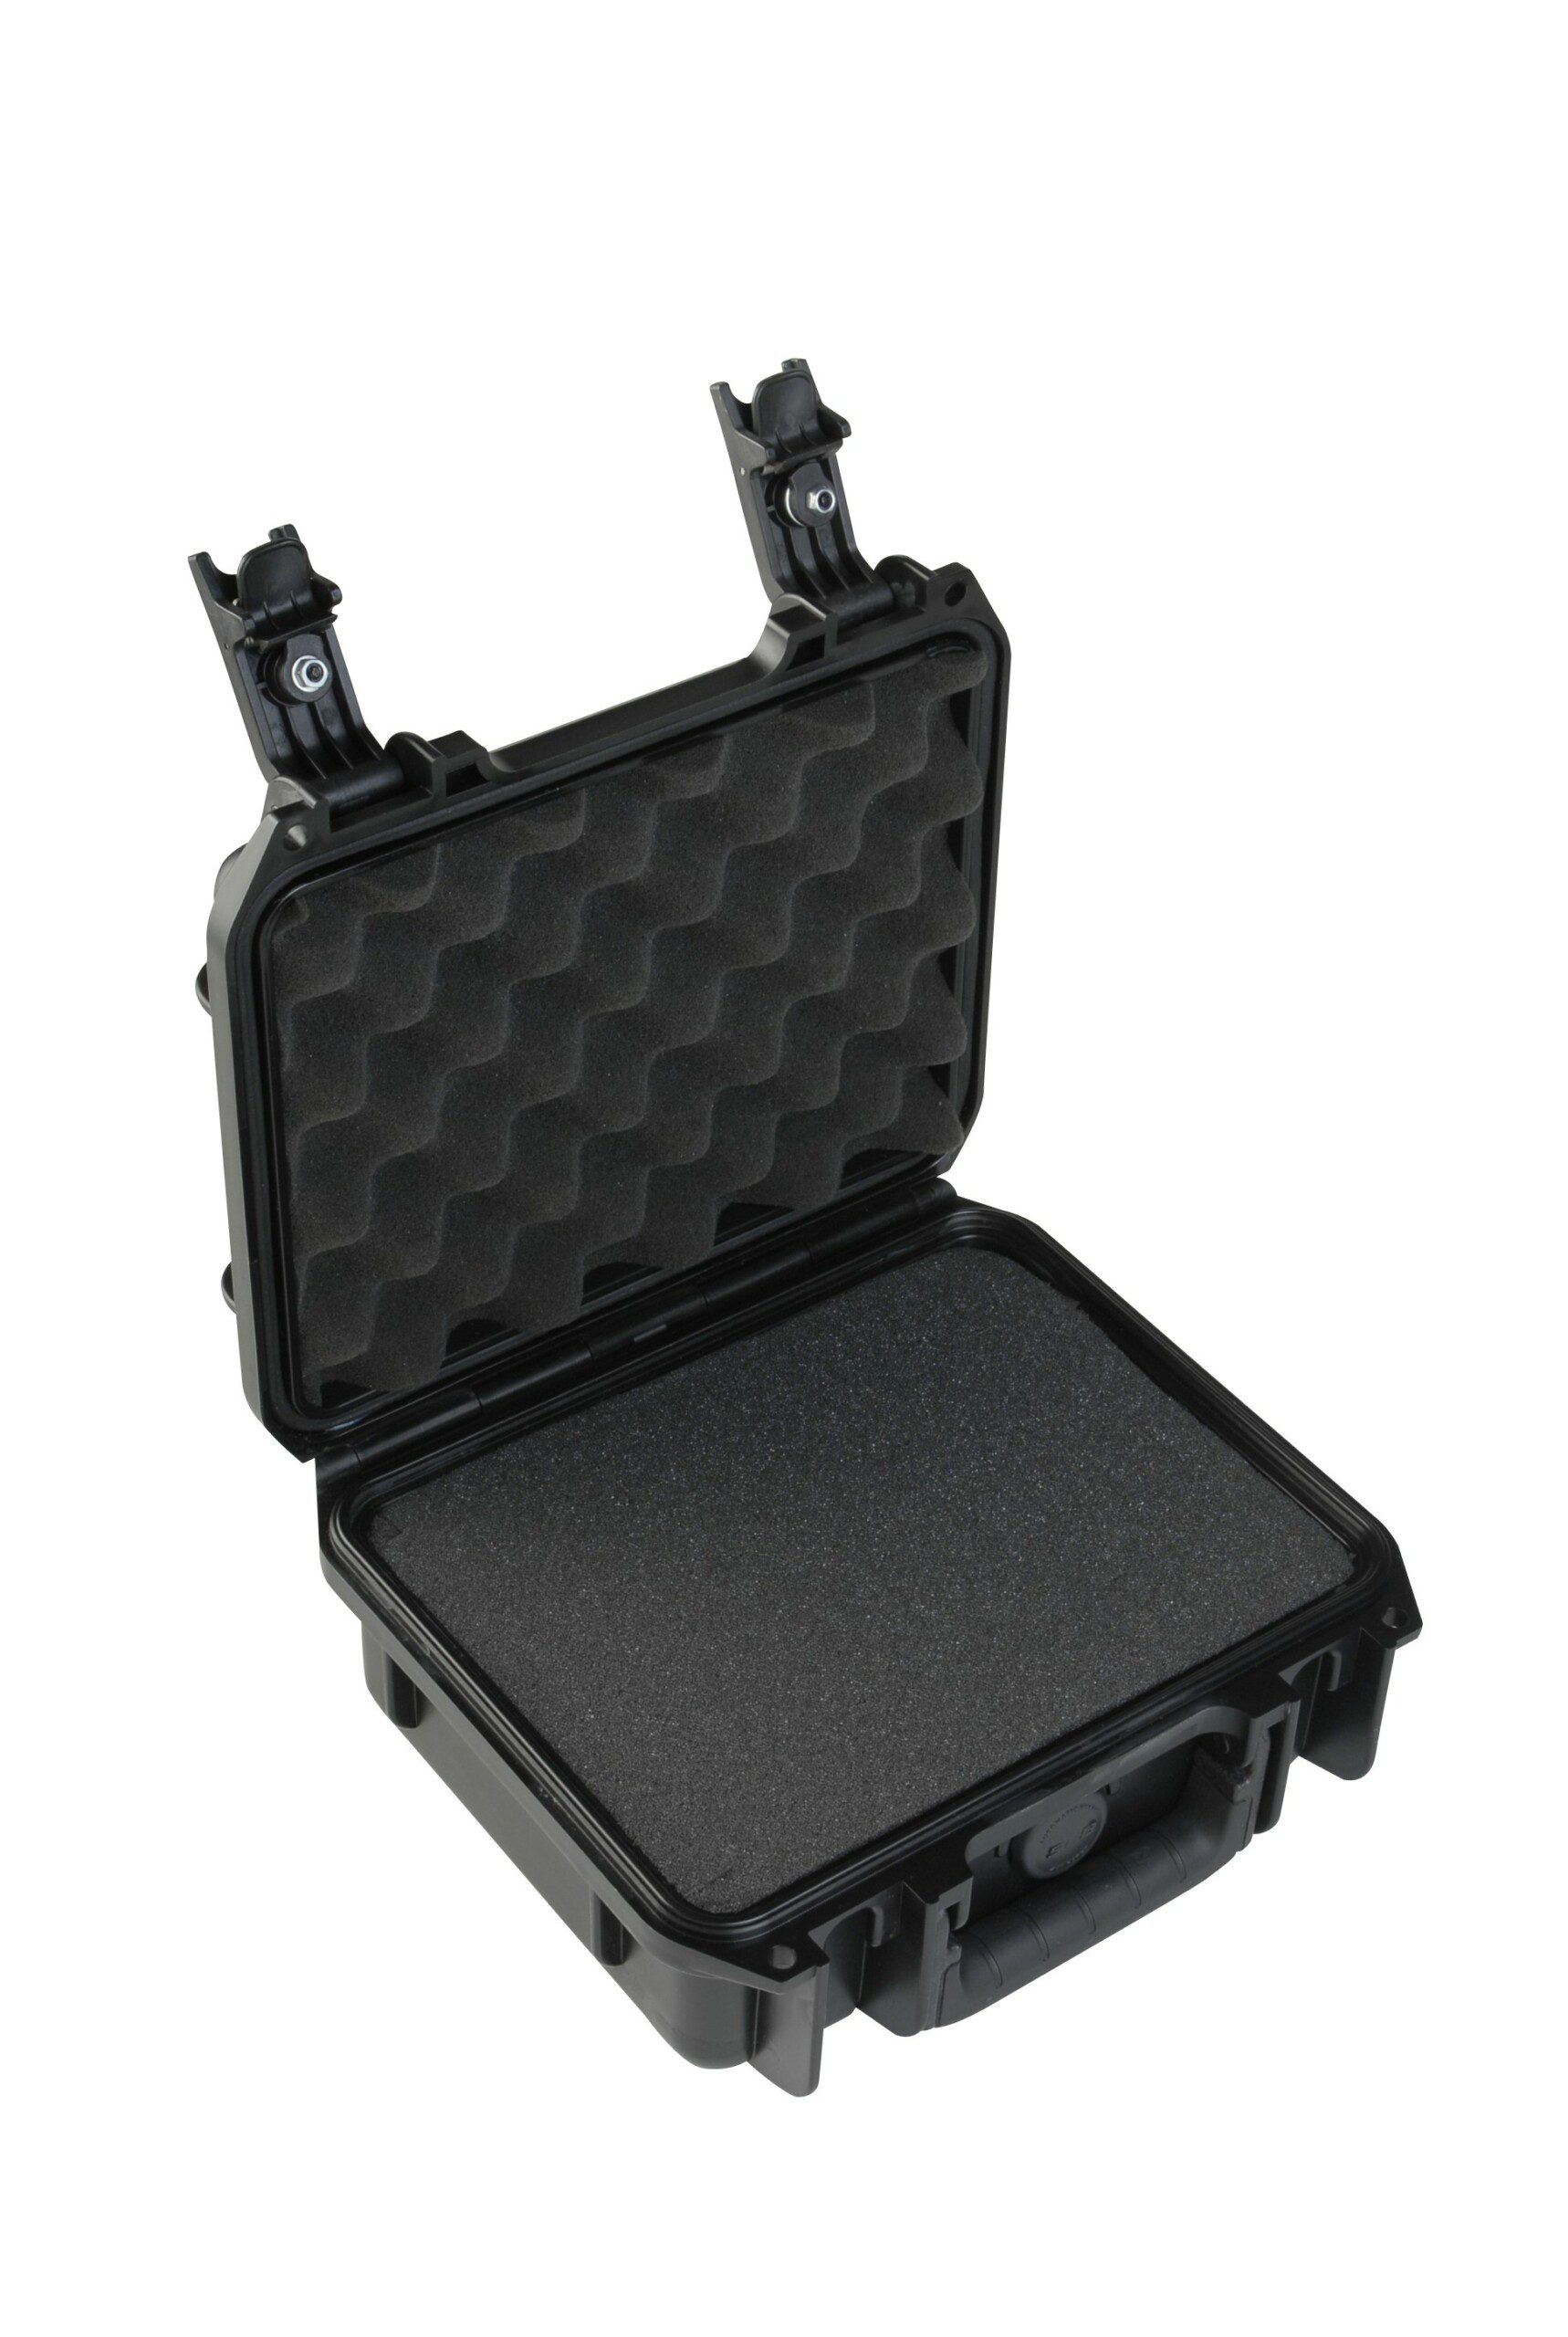 SKB iSeries Case 241x188x105mm avec mousse pré-découpée